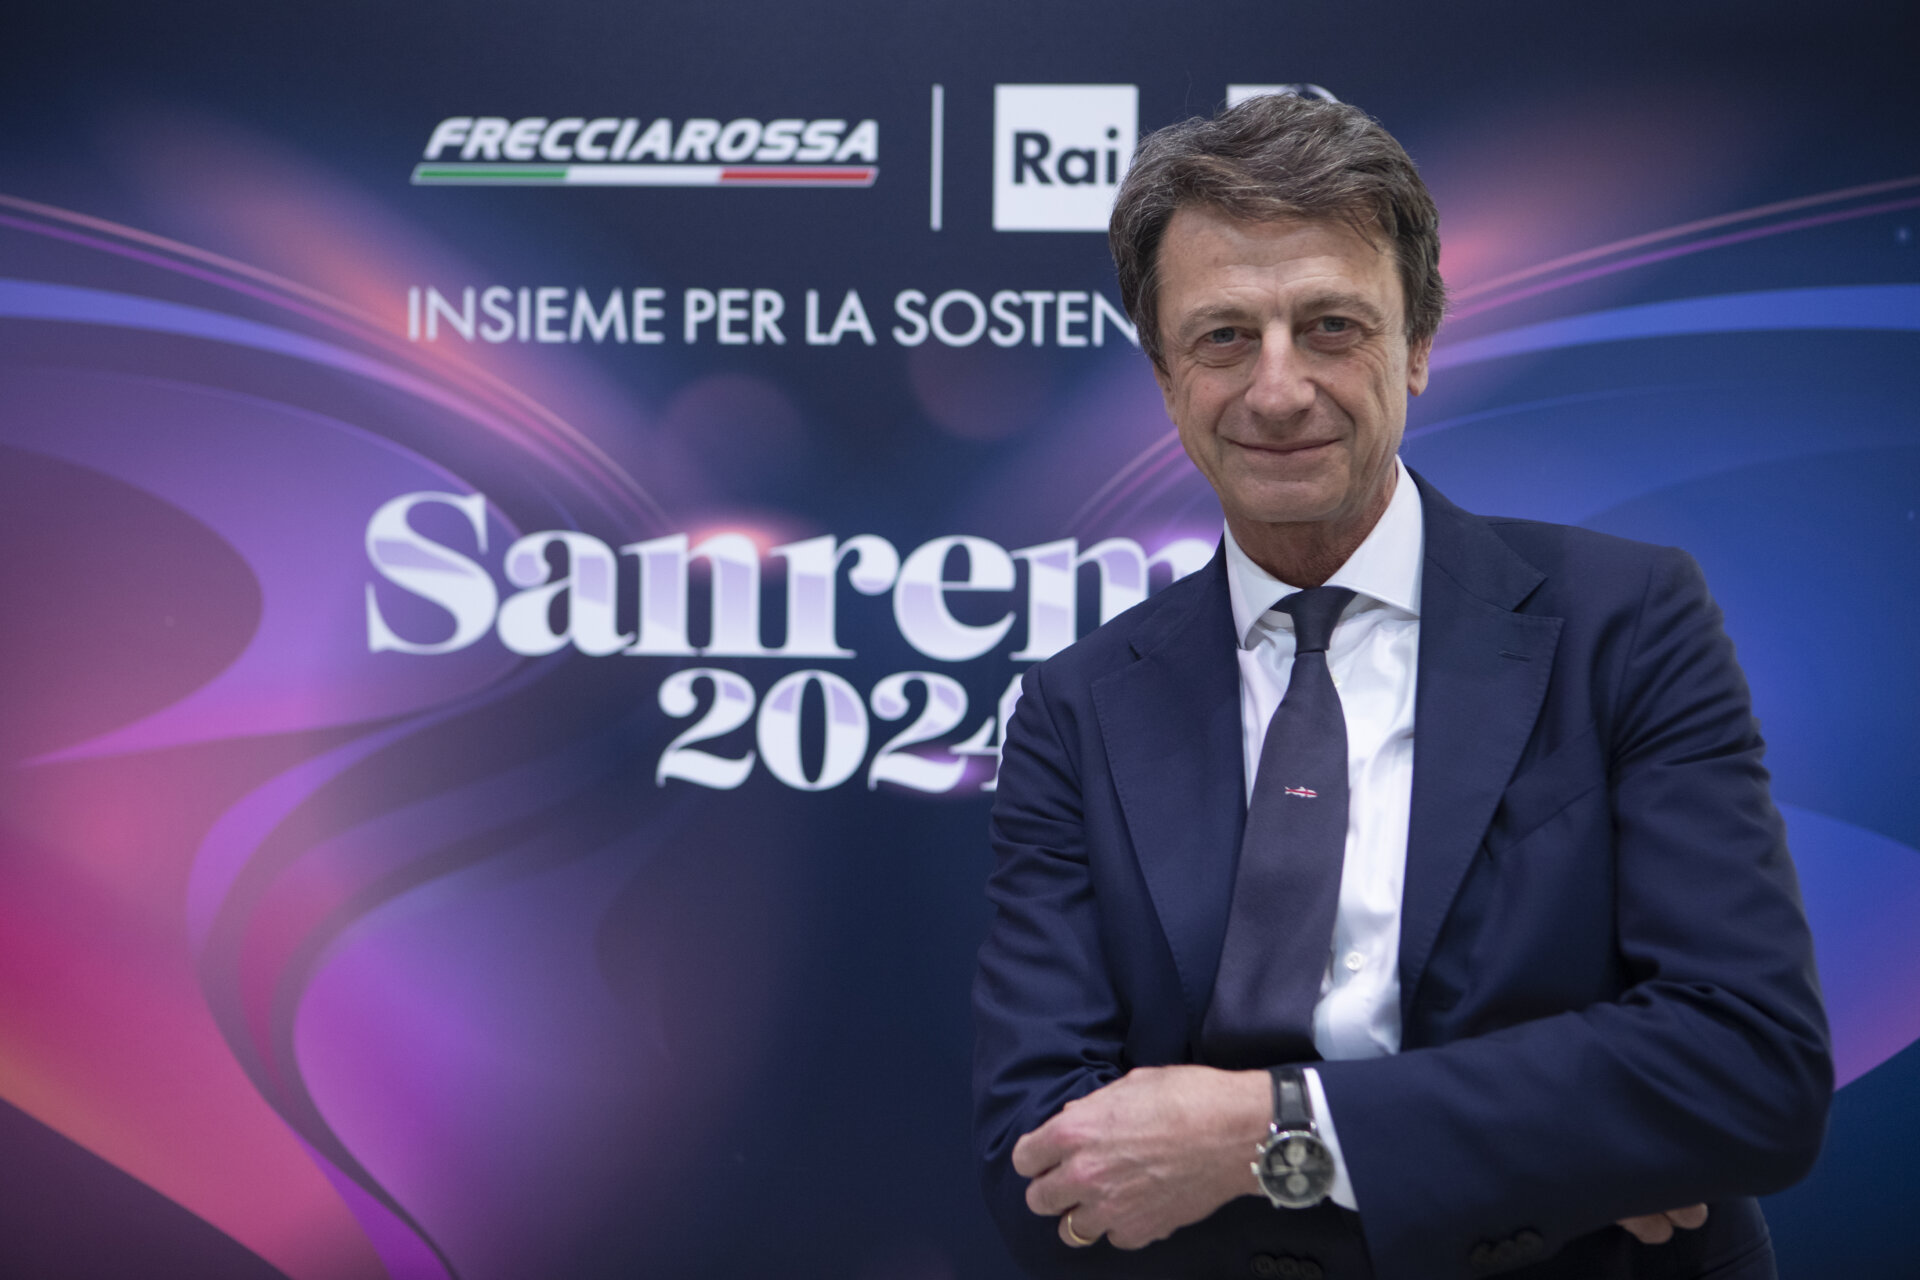 Trenitalia Sanremo Freccia1000